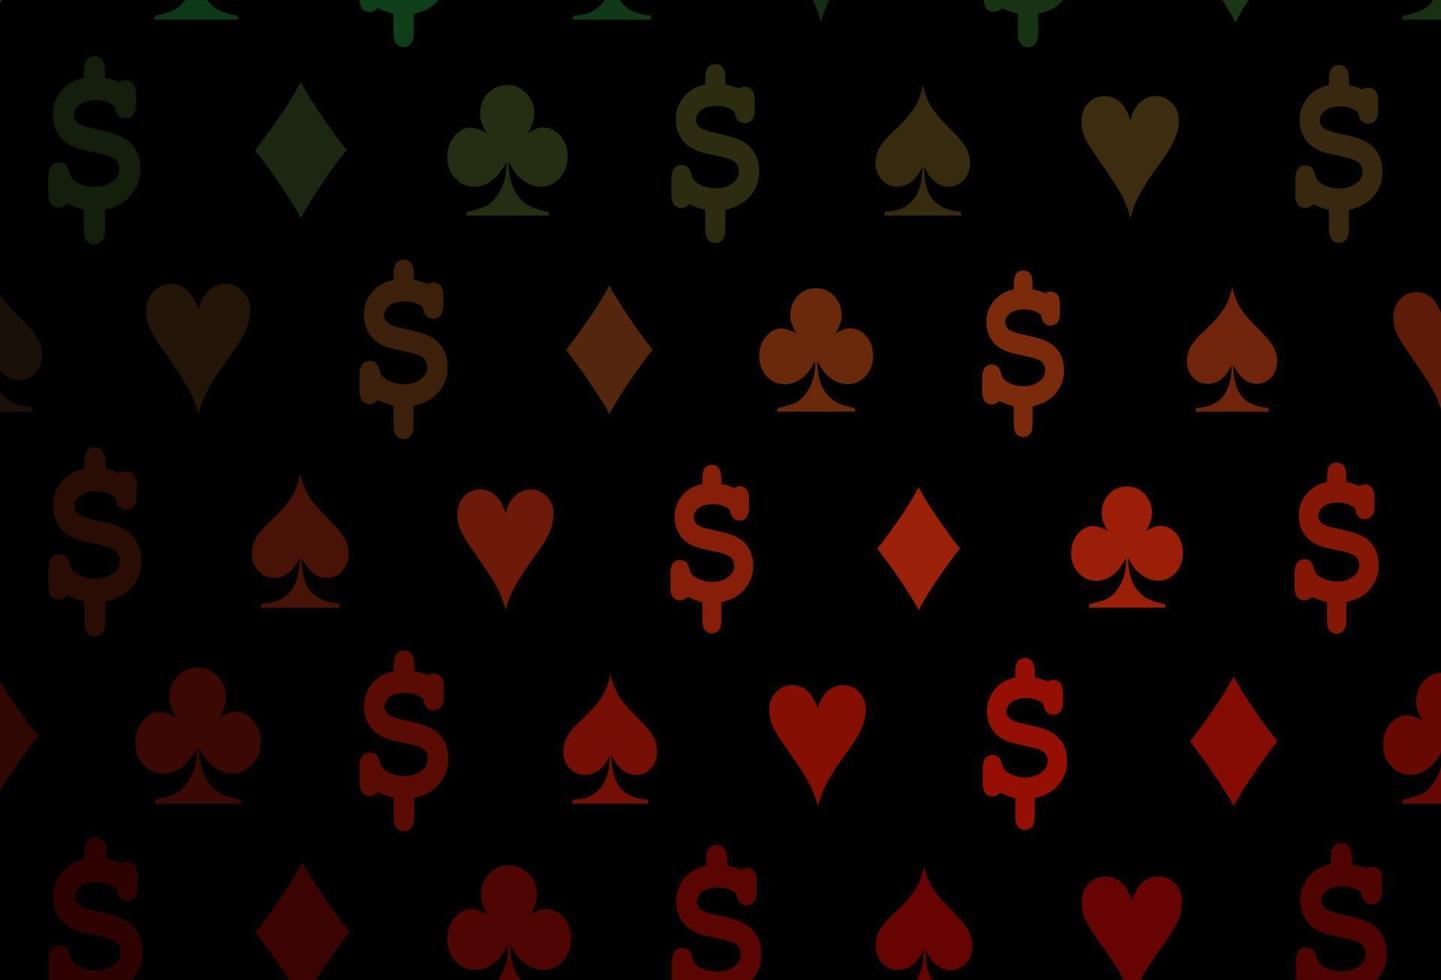 copertina vettoriale verde scuro, rosso con simboli di gioco d'azzardo.